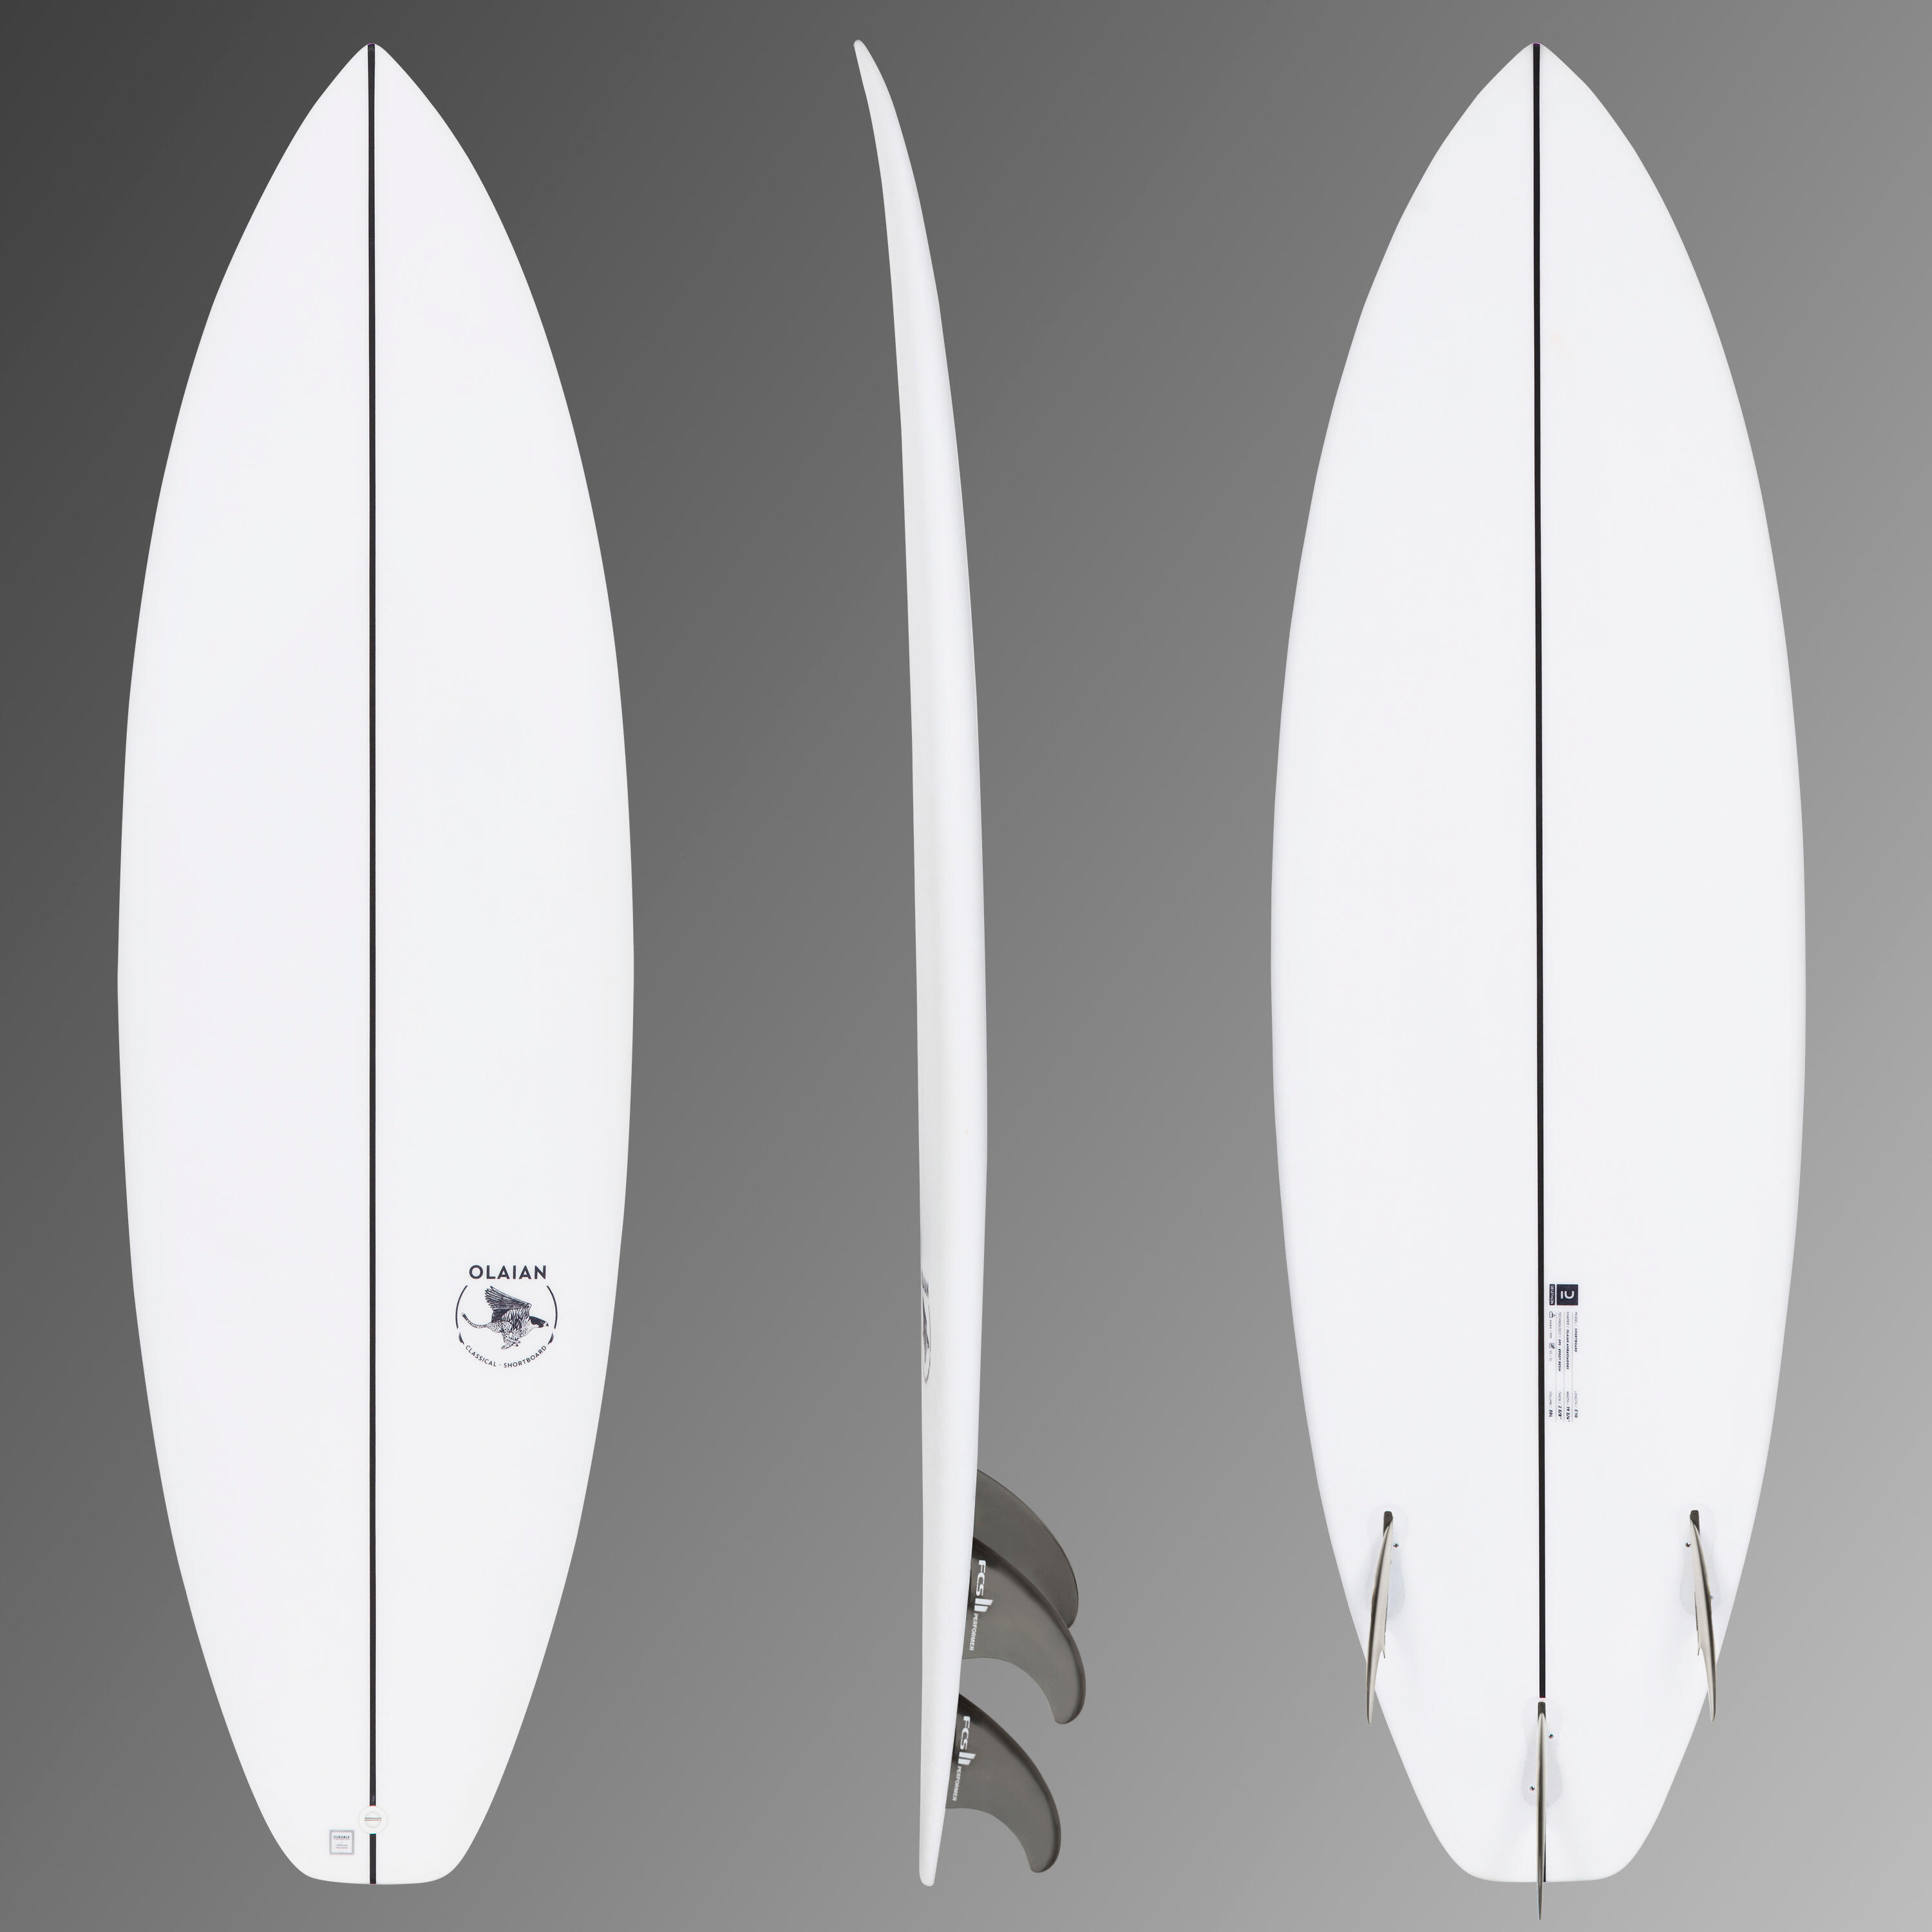 Placă shortboard 900 5’10” 30 L3 înotătoare incluse FCS2 decathlon.ro  Placi surf